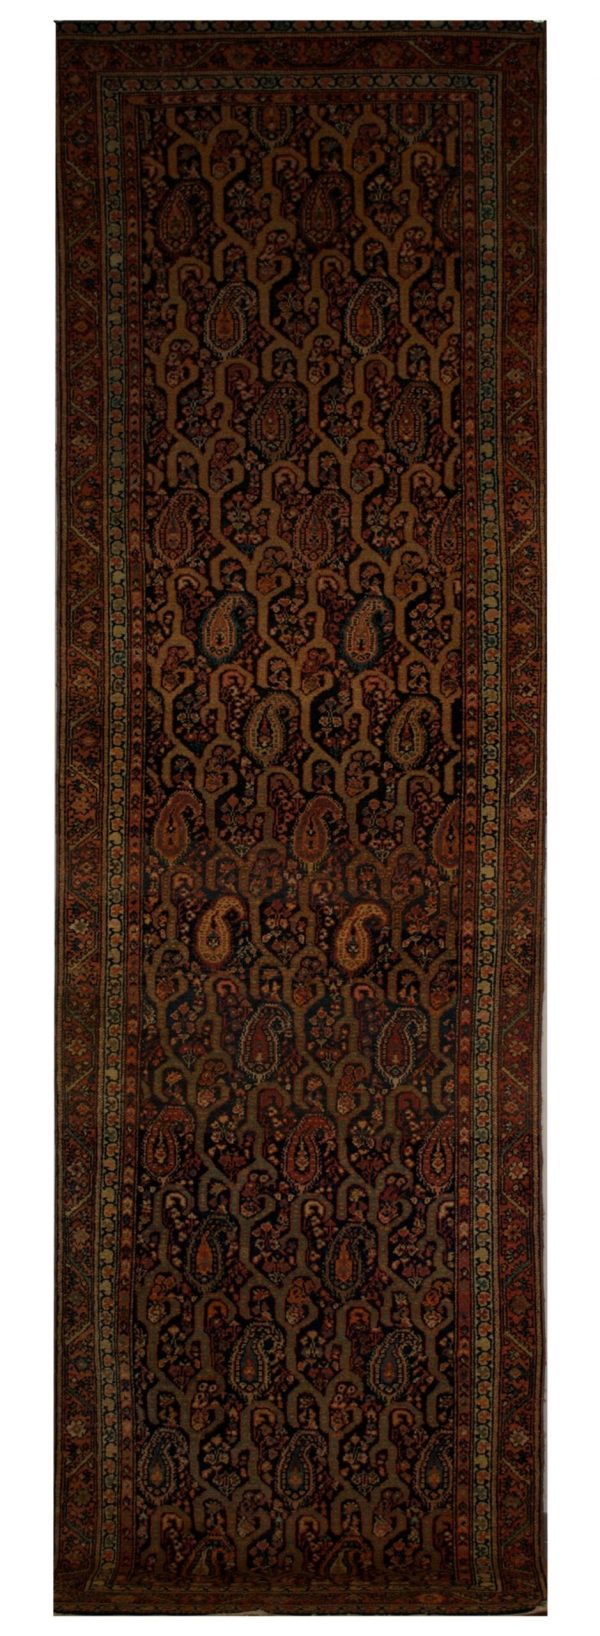 Antique Persian Malayer 3' 4" x 12' - Shabahang Royal Carpet